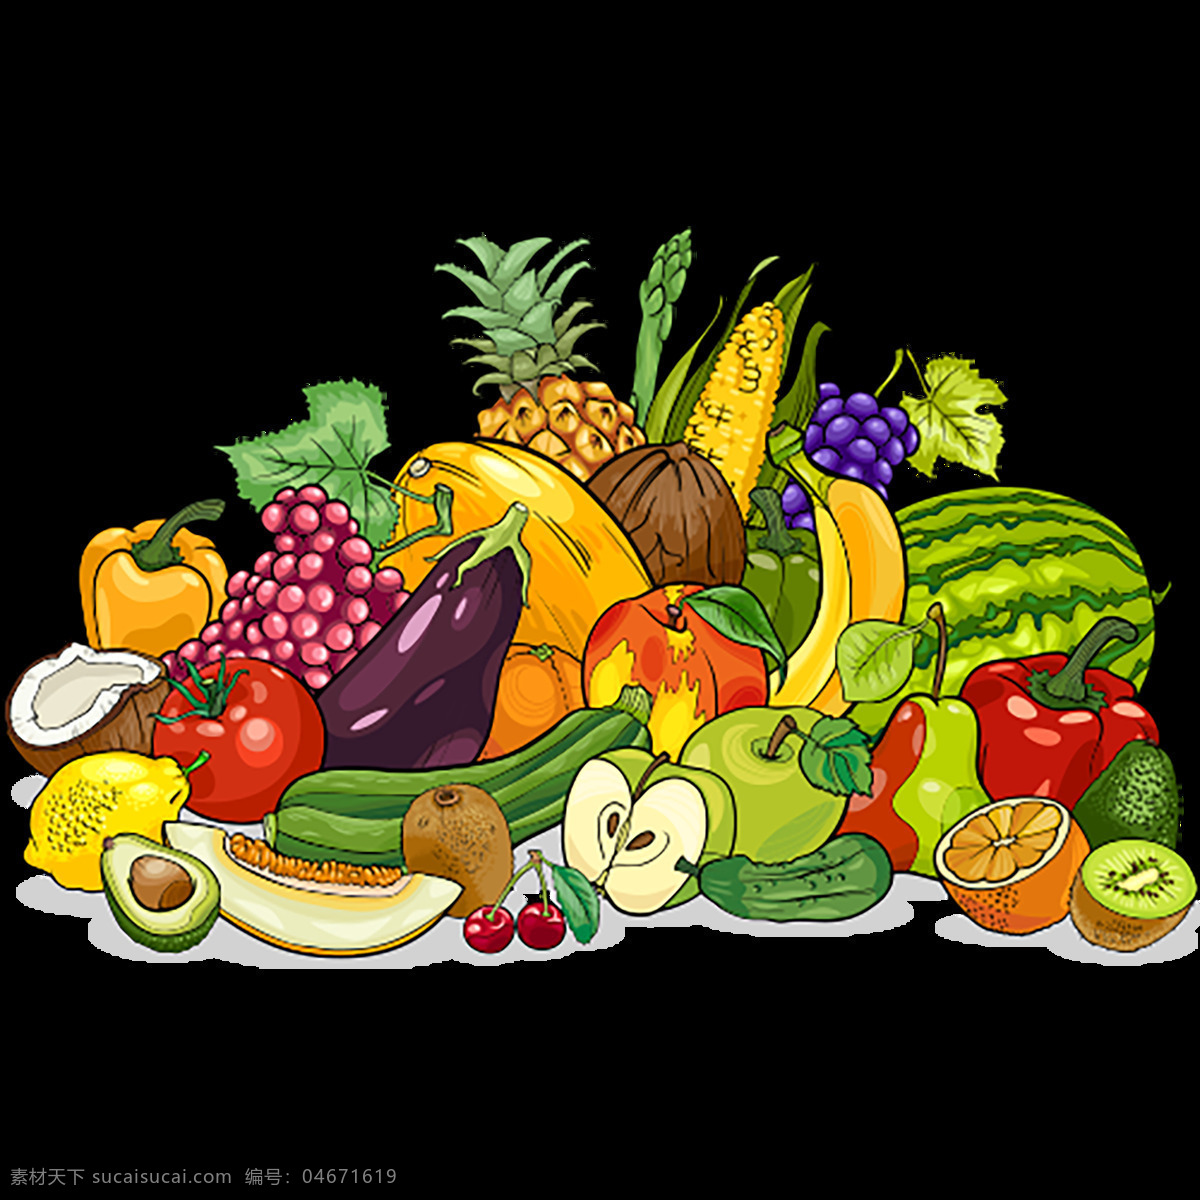 水果蔬菜 果蔬 手绘果蔬 透明背景果蔬 水果堆 果蔬堆 png素材